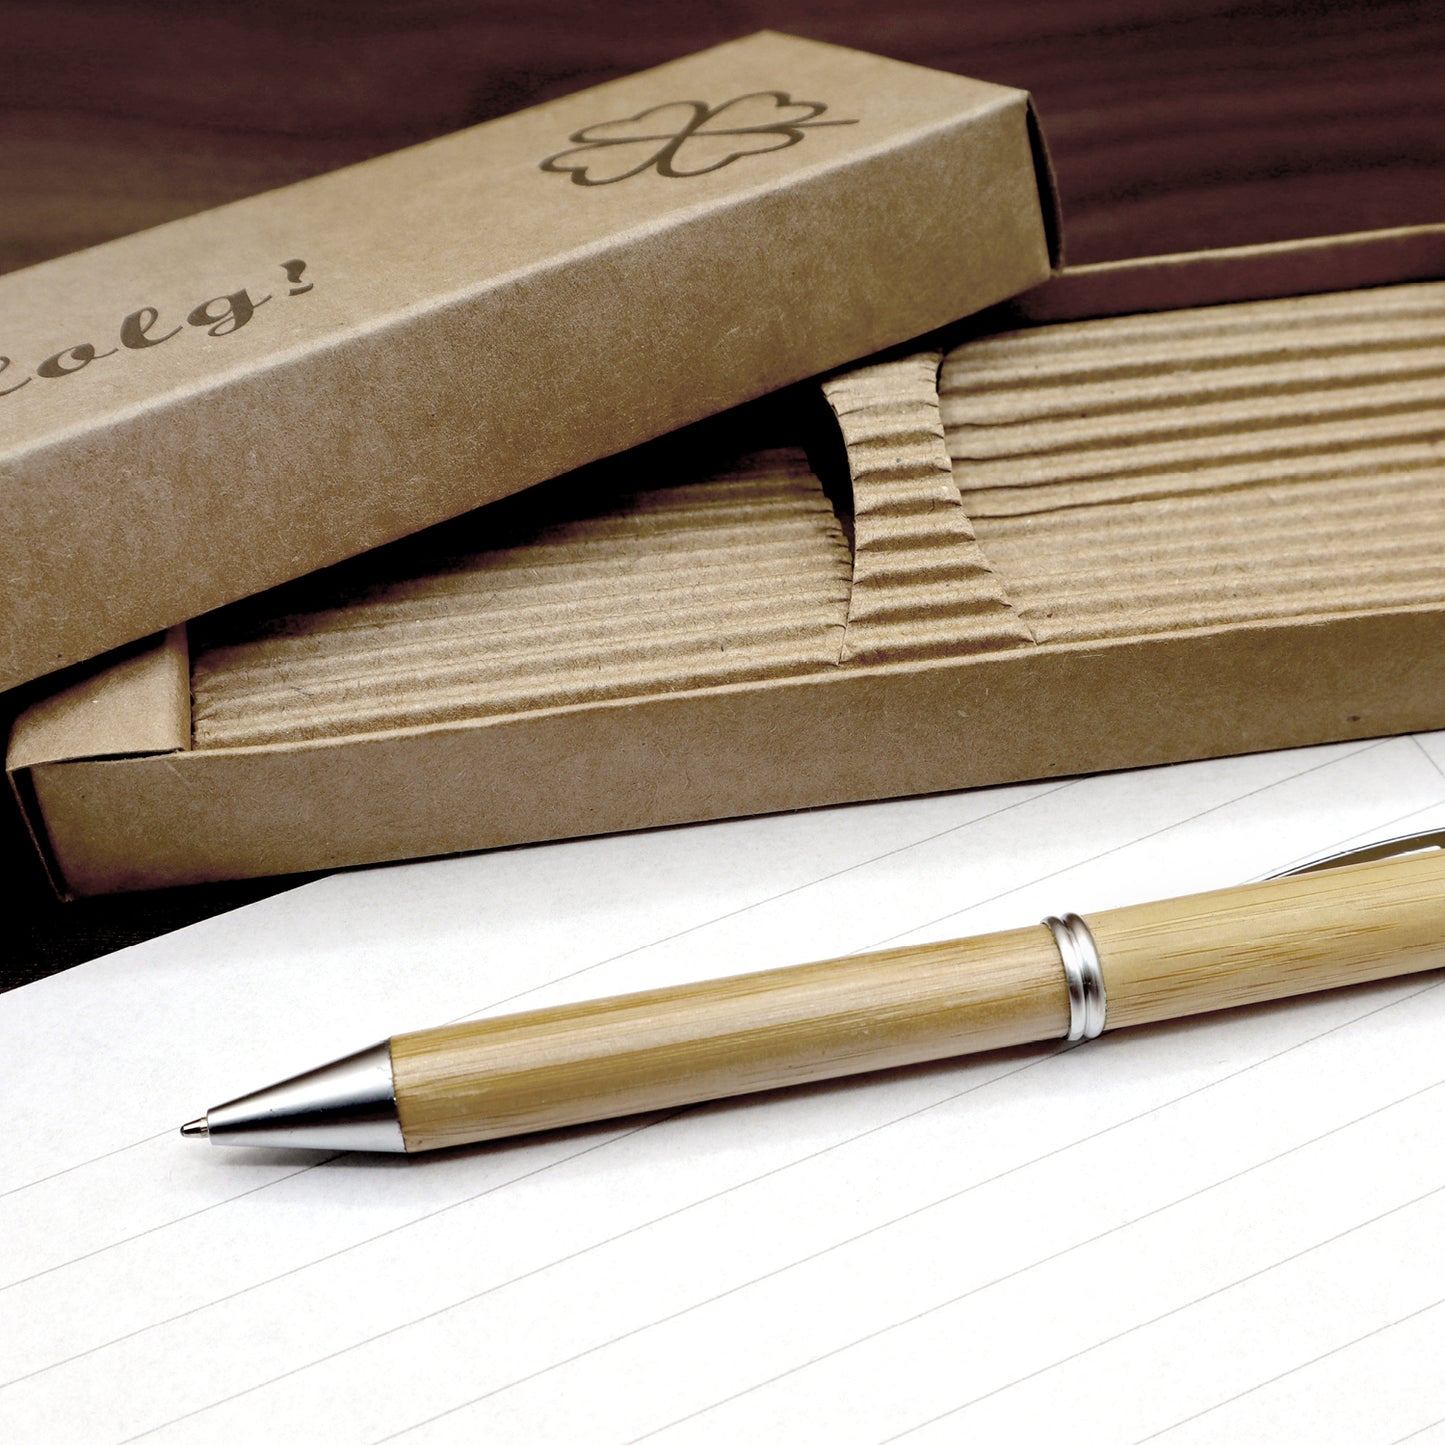 MORWE Bambus-Kugelschreiber mit Kleeblatt Gravur – Nachhaltiges Geschenk als Glücksbringer